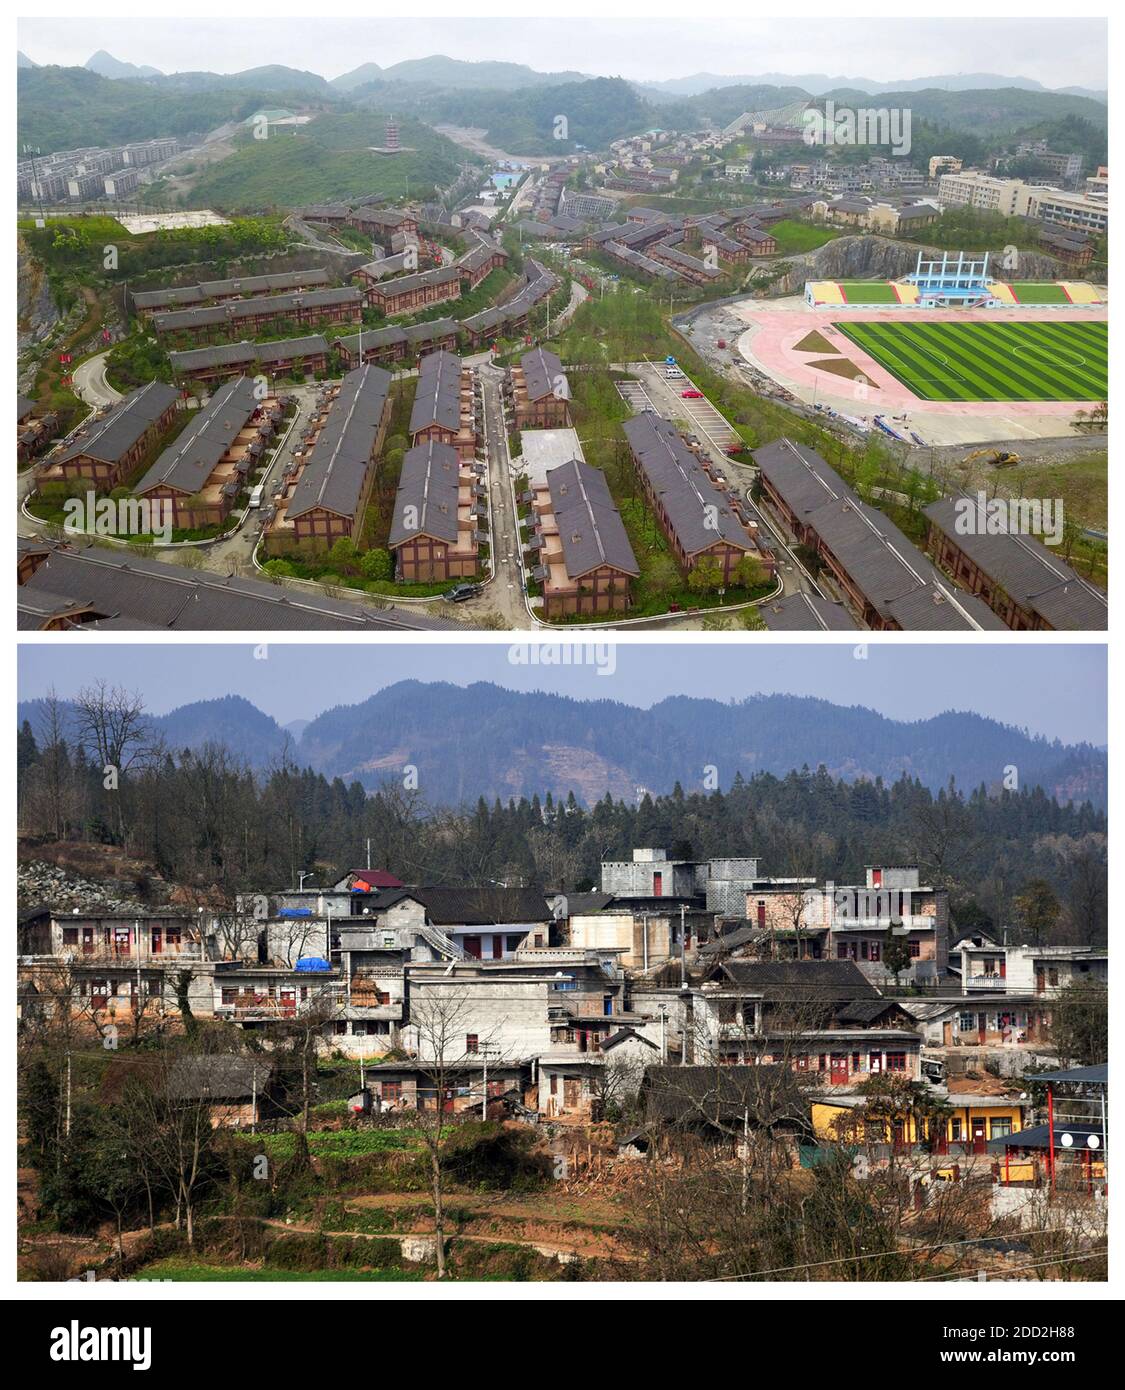 (201124) -- GUIYANG, 24. November 2020 (Xinhua) -- Auf diesem Combo-Foto zeigt der obere Teil, der am 6. Juni 2019 von Yang Wenbin aufgenommen wurde, das neue Aussehen der Stadt Ameiqituo und der untere Teil, der am 15. Januar 2018 von Chen Yalin aufgenommen wurde, das Dorf Sanbao vor der Umsiedlung im Landkreis Qinglong, südwestlich der Provinz Guizhou, China. China hat das Kunststück erreicht, alle verbliebenen Landkreise von der Armutsliste des Landes zu entfernen. Die letzten neun verarmten Landkreise, alle in der südwestlichen chinesischen Provinz Guizhou, haben die absolute Armut beseitigt, teilte die Provinzregierung am Montag mit. Das bedeutet, dass alle 832 Stockfoto